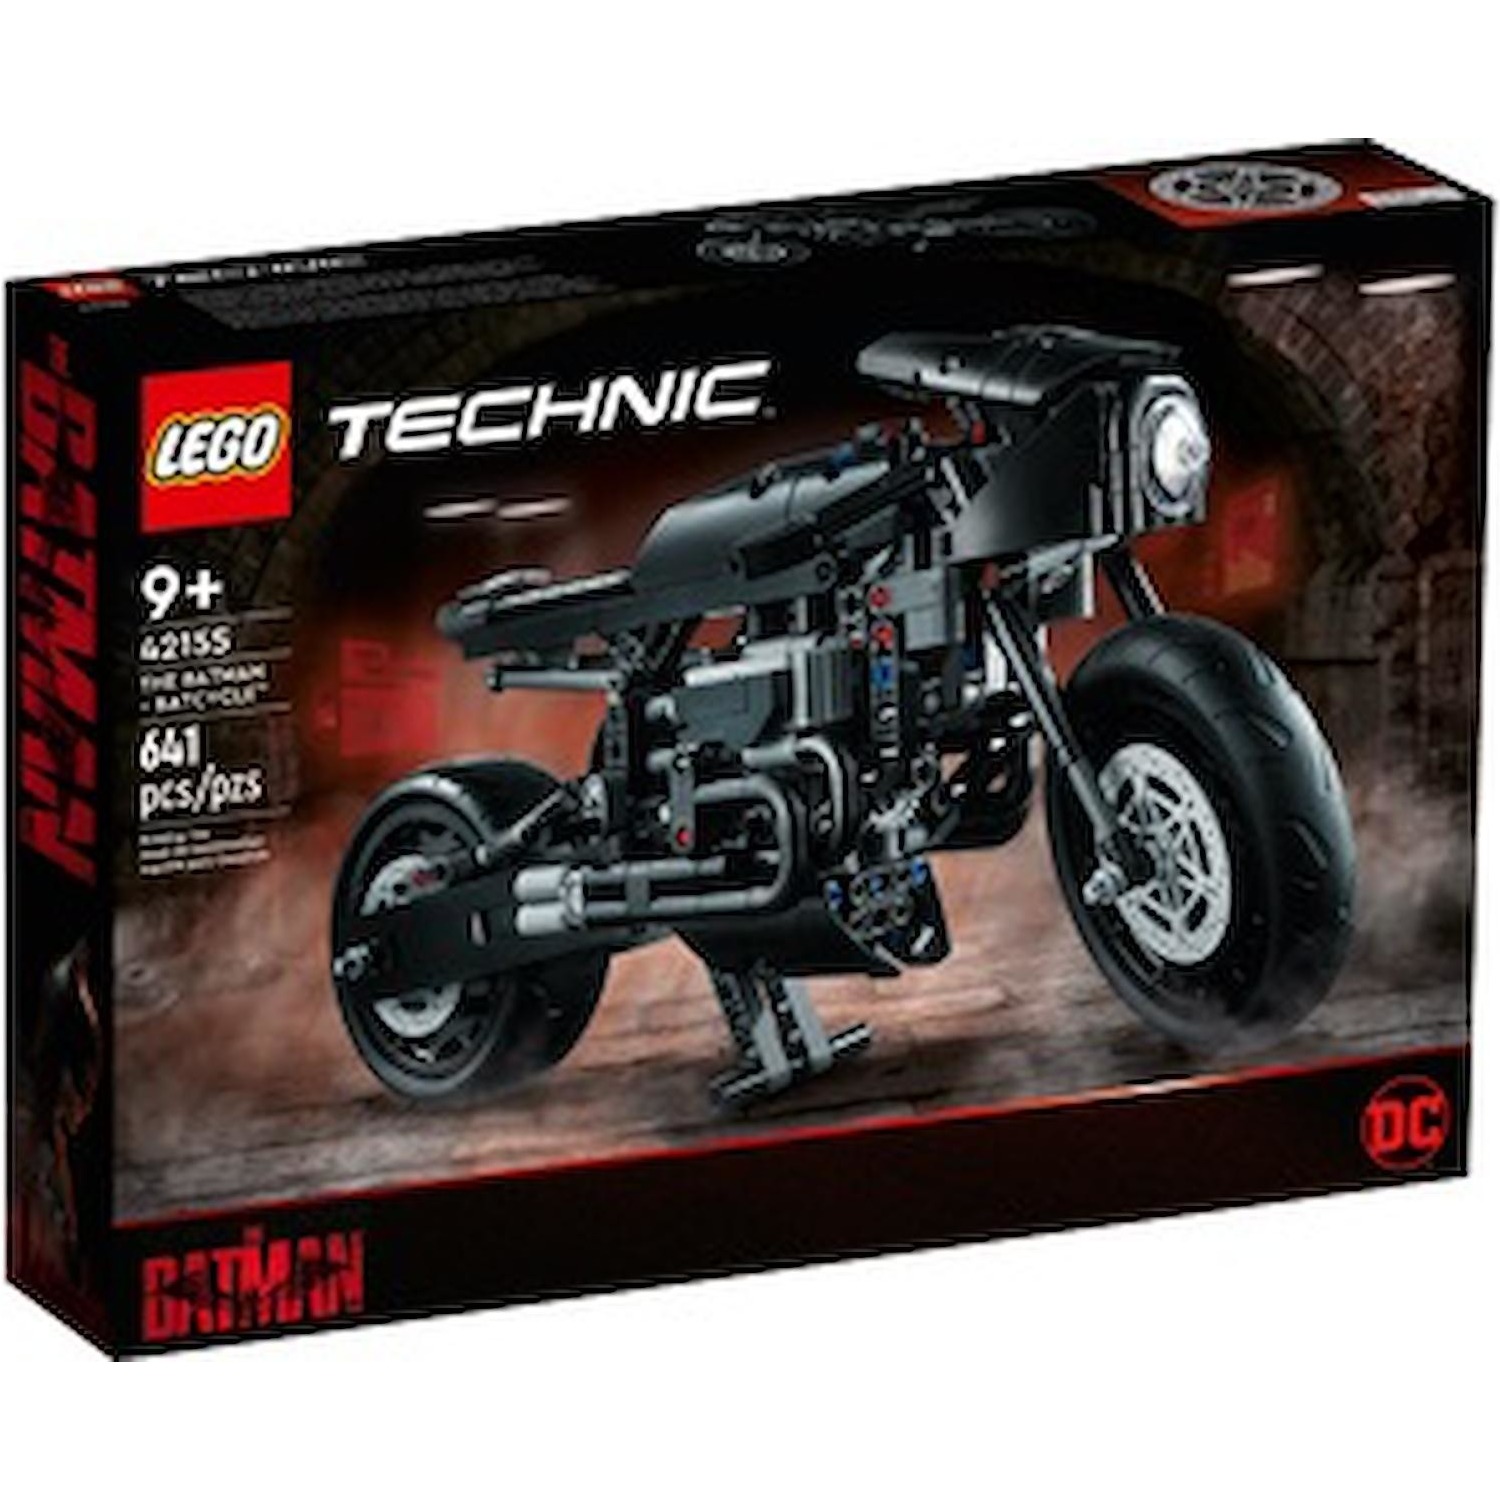 Immagine per Lego Technic Batcycle da DIMOStore